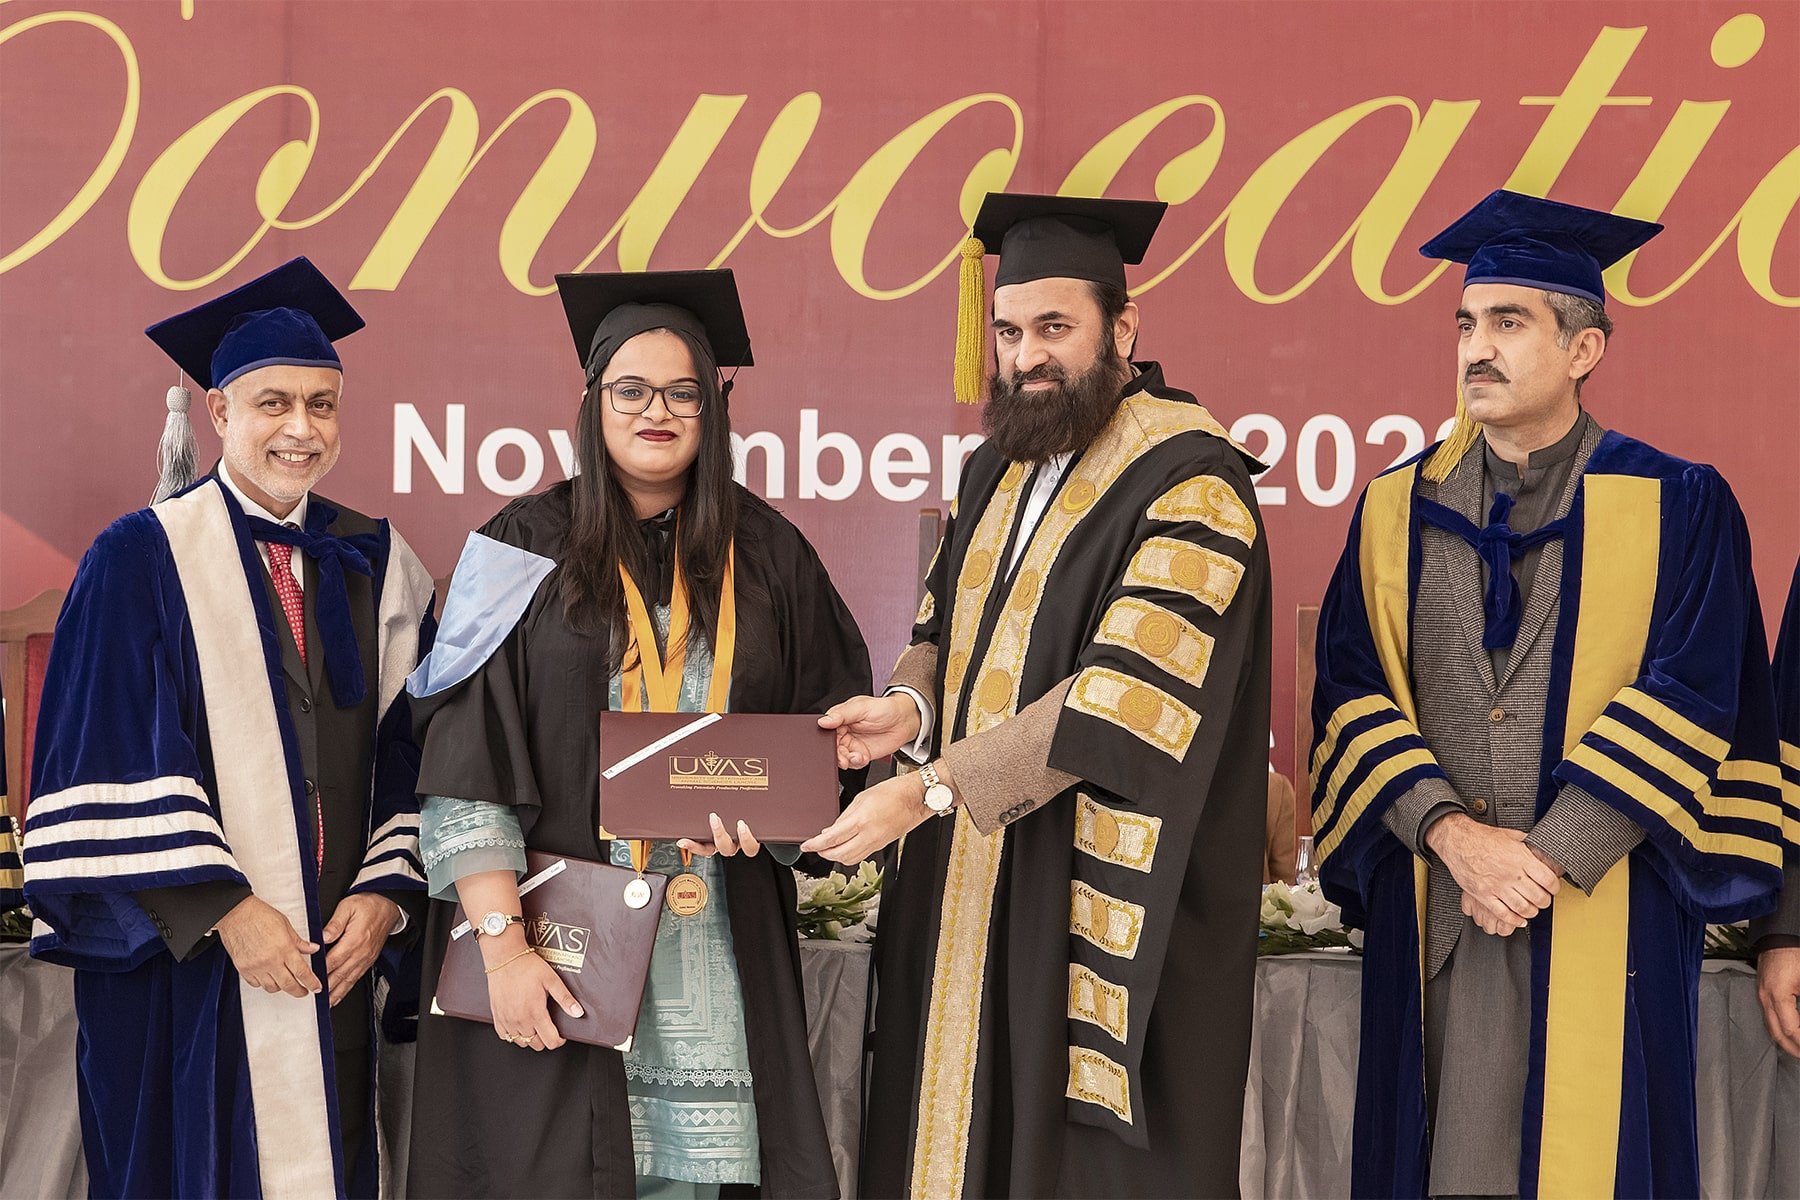 1,722 graduates awarded degrees at 13th UVAS Convocation